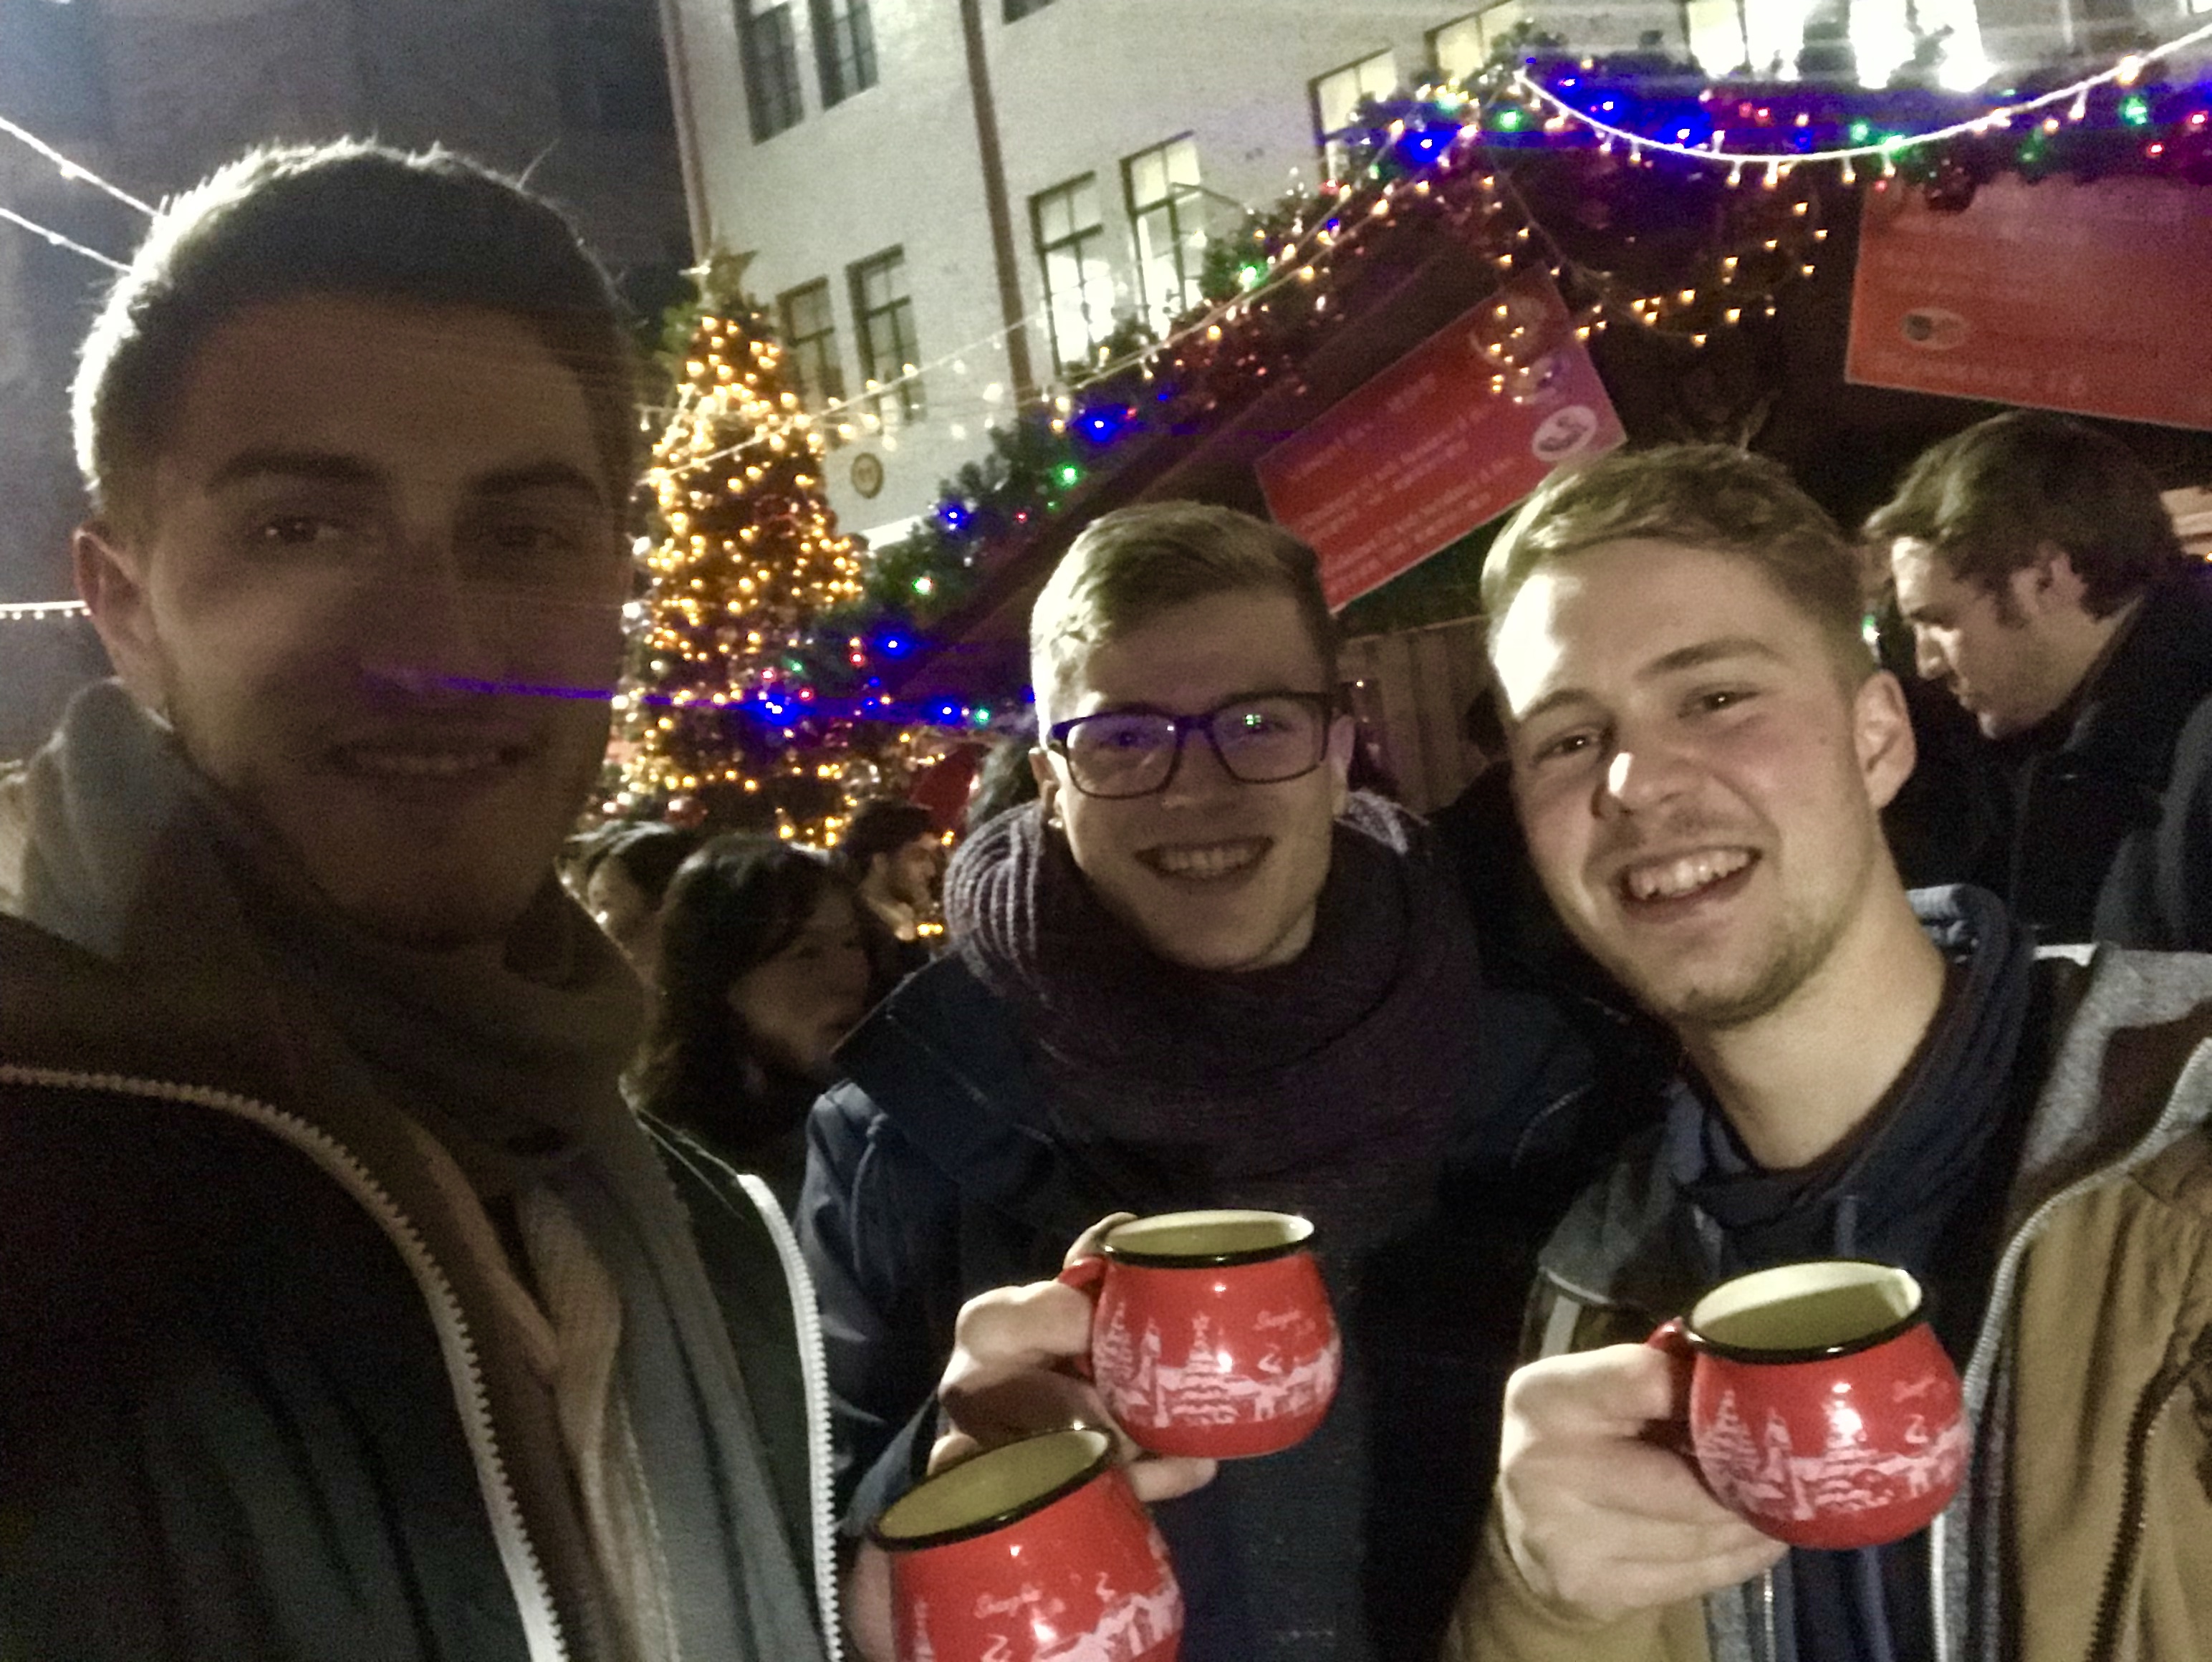 Foto: Drei Studierende mit Glühweintassen in der Hand tätigen ein Selfie Foto auf dem Weihnachtsmarkt.